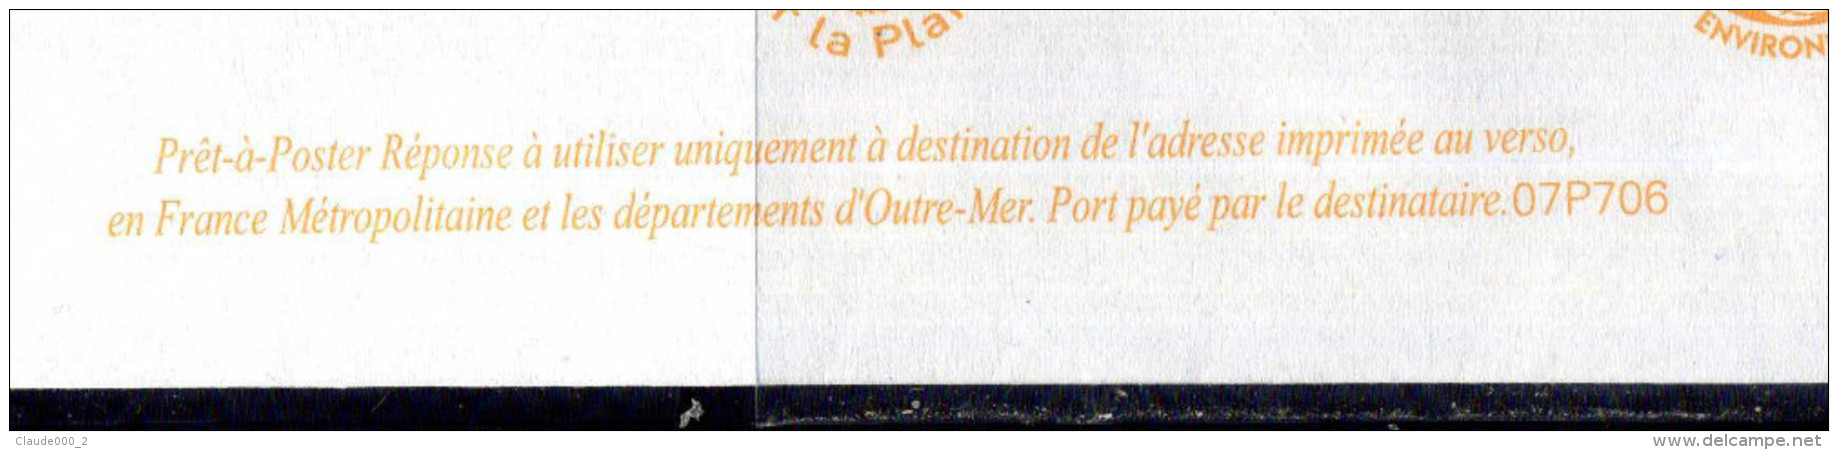 PAP Lamouche " FONDATION DE FRANCE " Port Payé Par 07P706 NEUF ** - Prêts-à-poster: Réponse /Lamouche